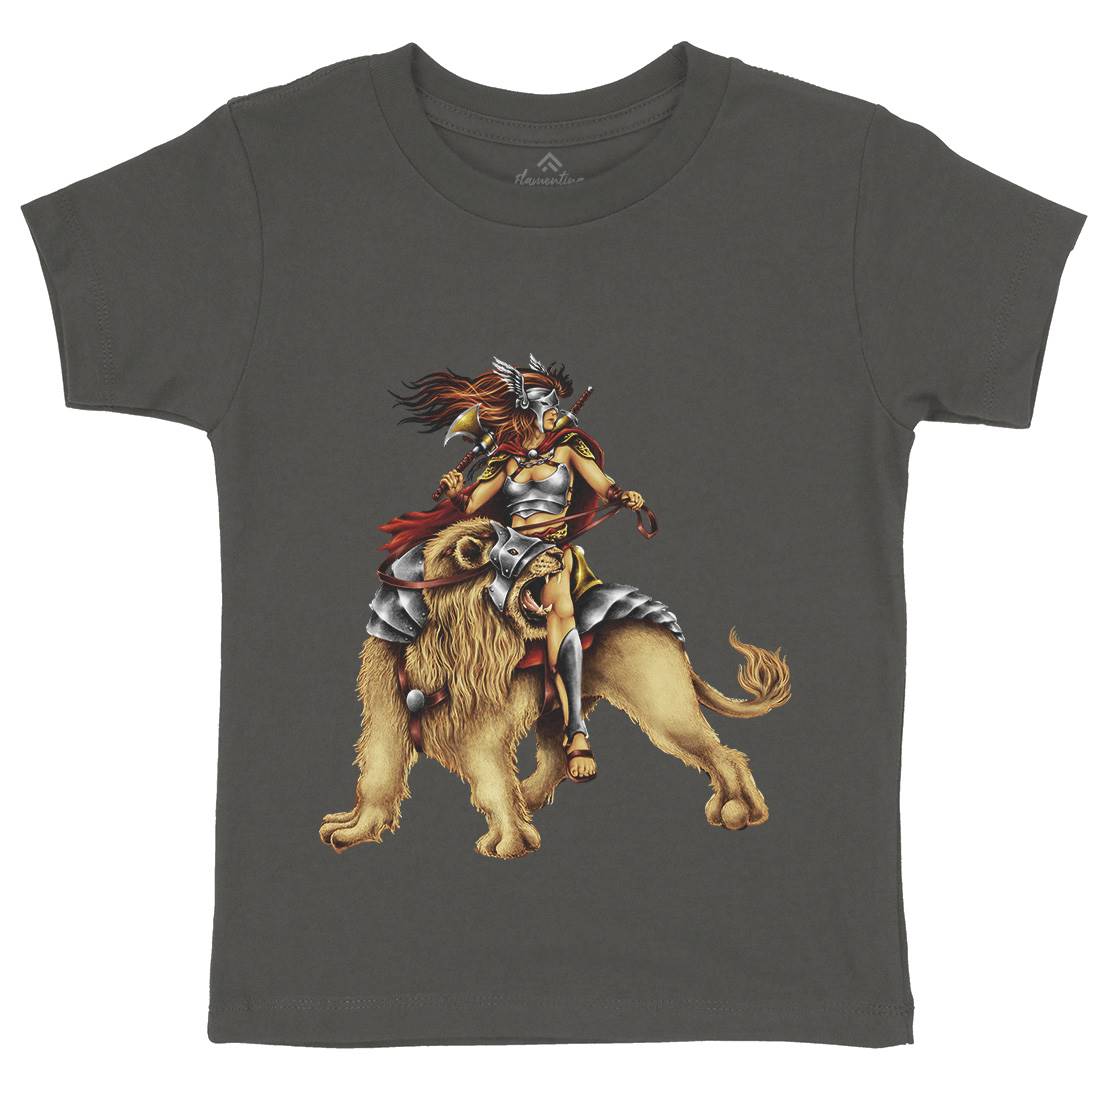 Lion Rider Kids Crew Neck T-Shirt Warriors A483